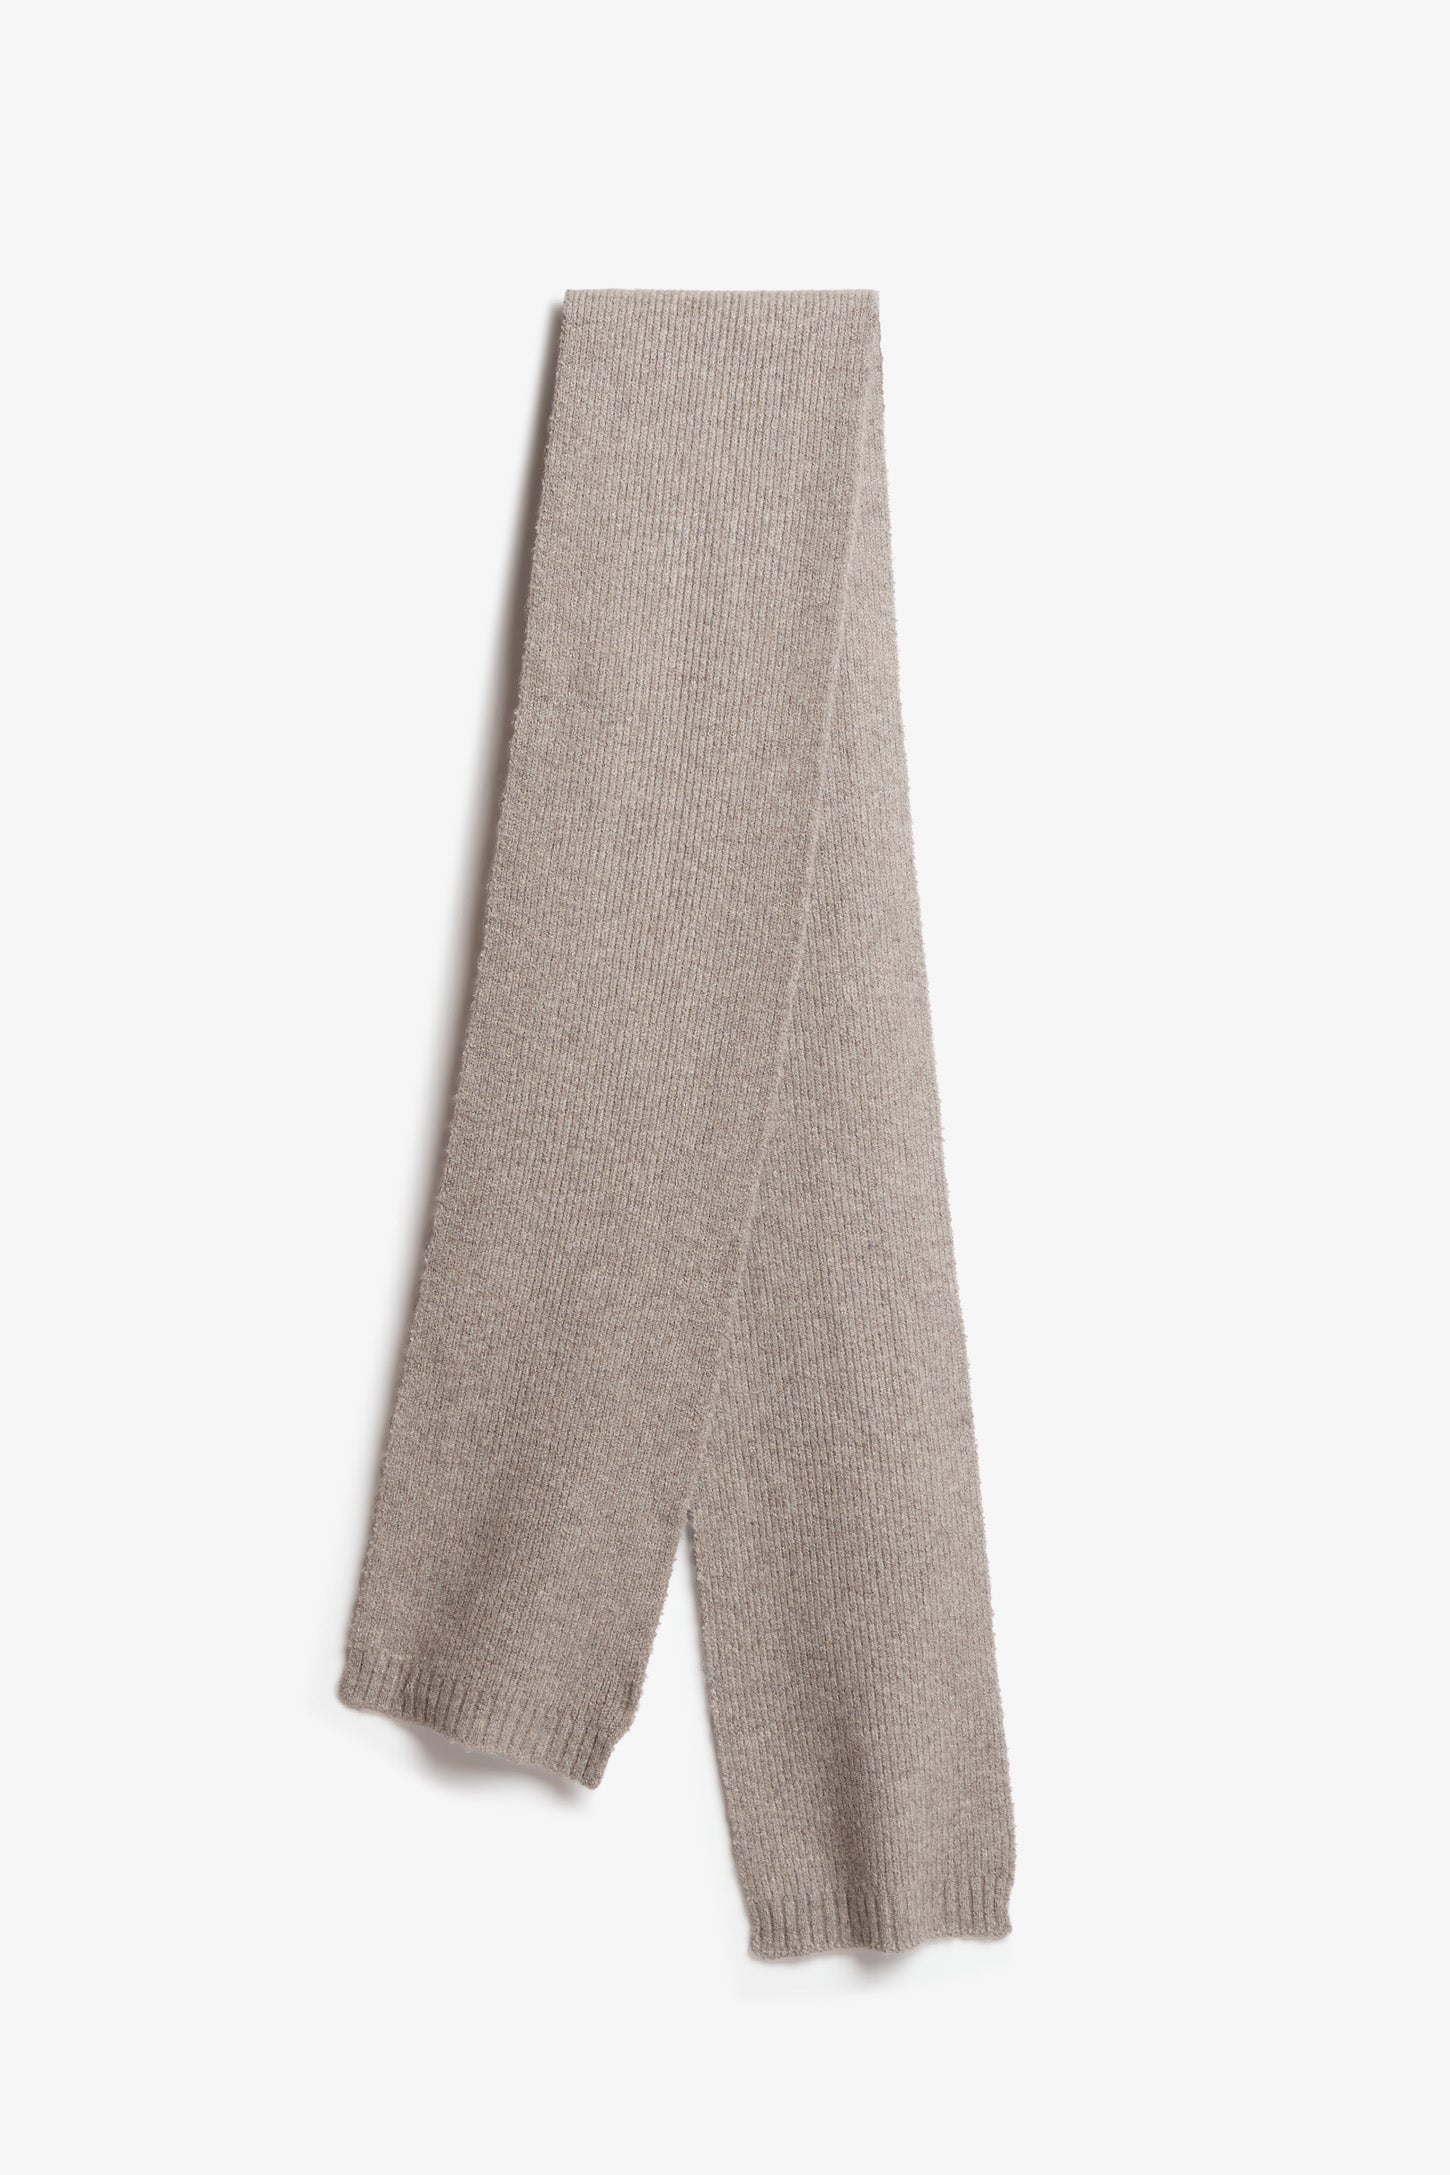 Foulard en tricot, polyester recyclé - Femme && GRIS PALE